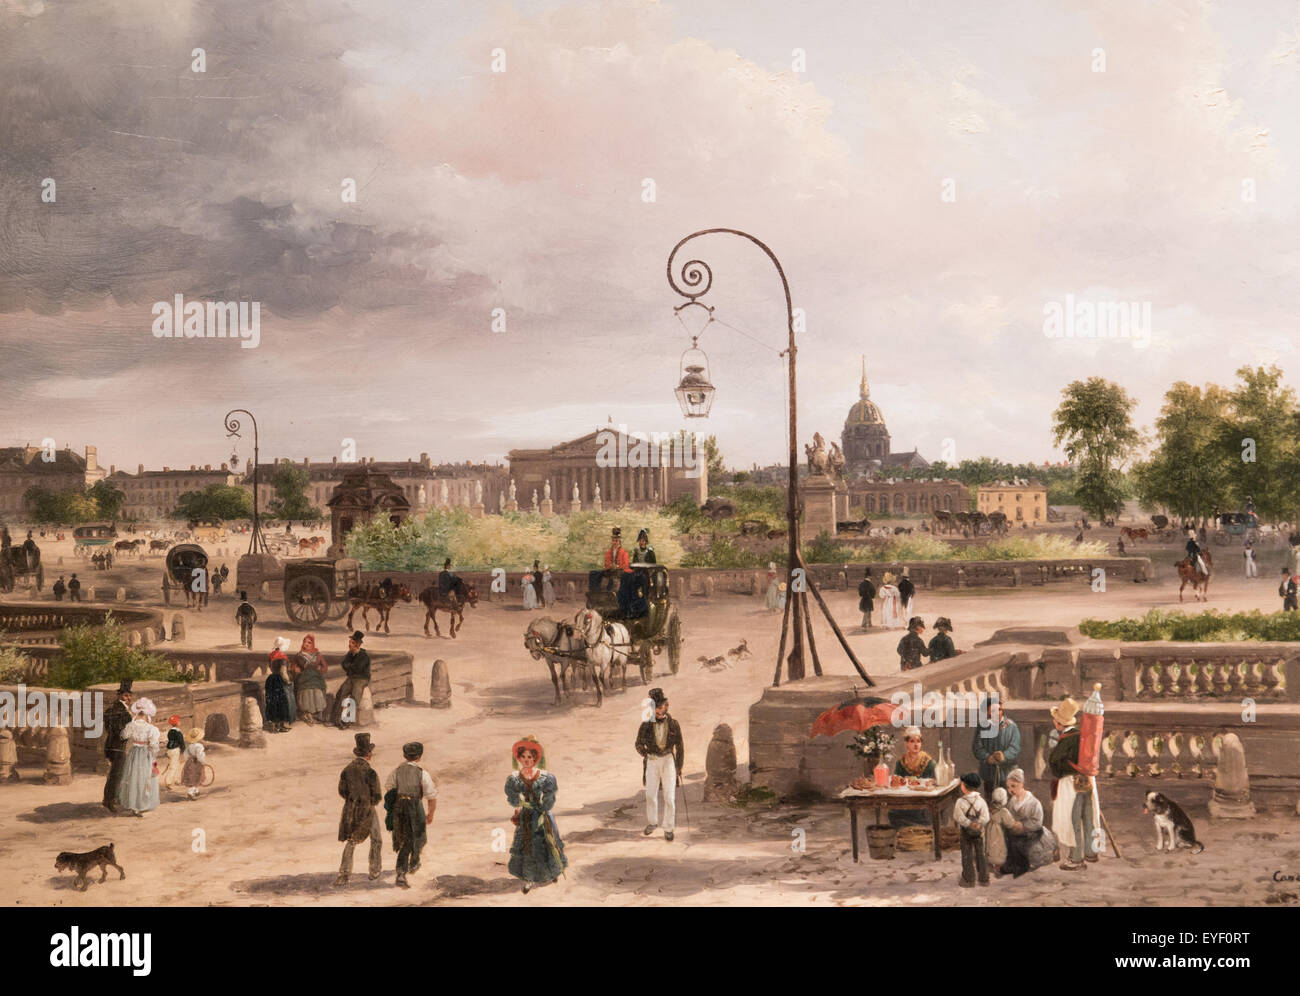 La plaza Louis XVI (actual place de la Concorde) 17/10/2013 - Colección del siglo XIX. Foto de stock